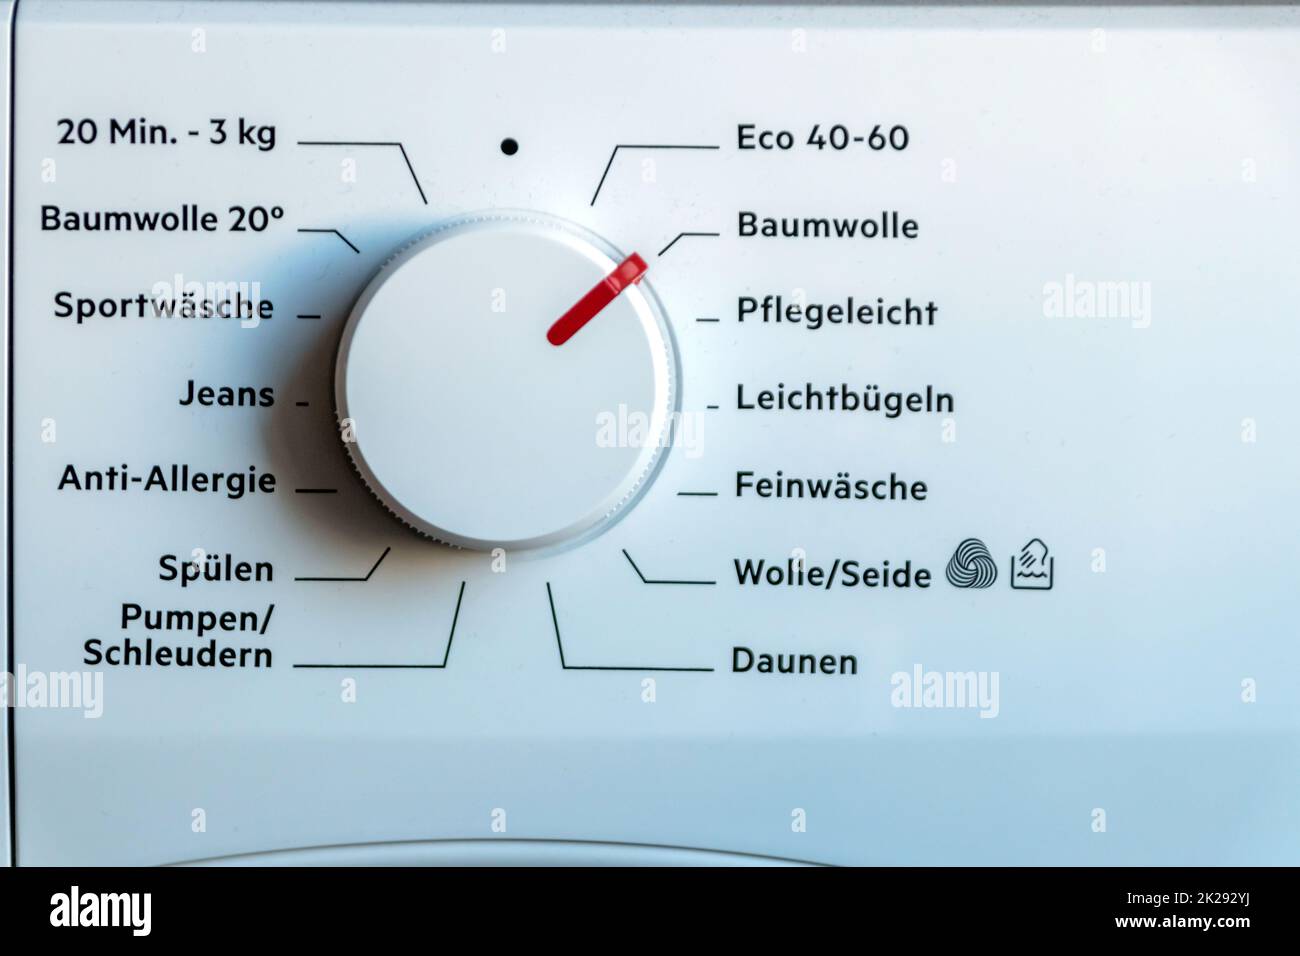 Detailansicht des Bedienfelds der Waschmaschine mit modernem Thermostat und Programmauswahl zum Umschalten zwischen verschiedenen Programmen für die Wäscherei in modernen Haushalten für die Hygiene der Reinigungskräfte Stockfoto